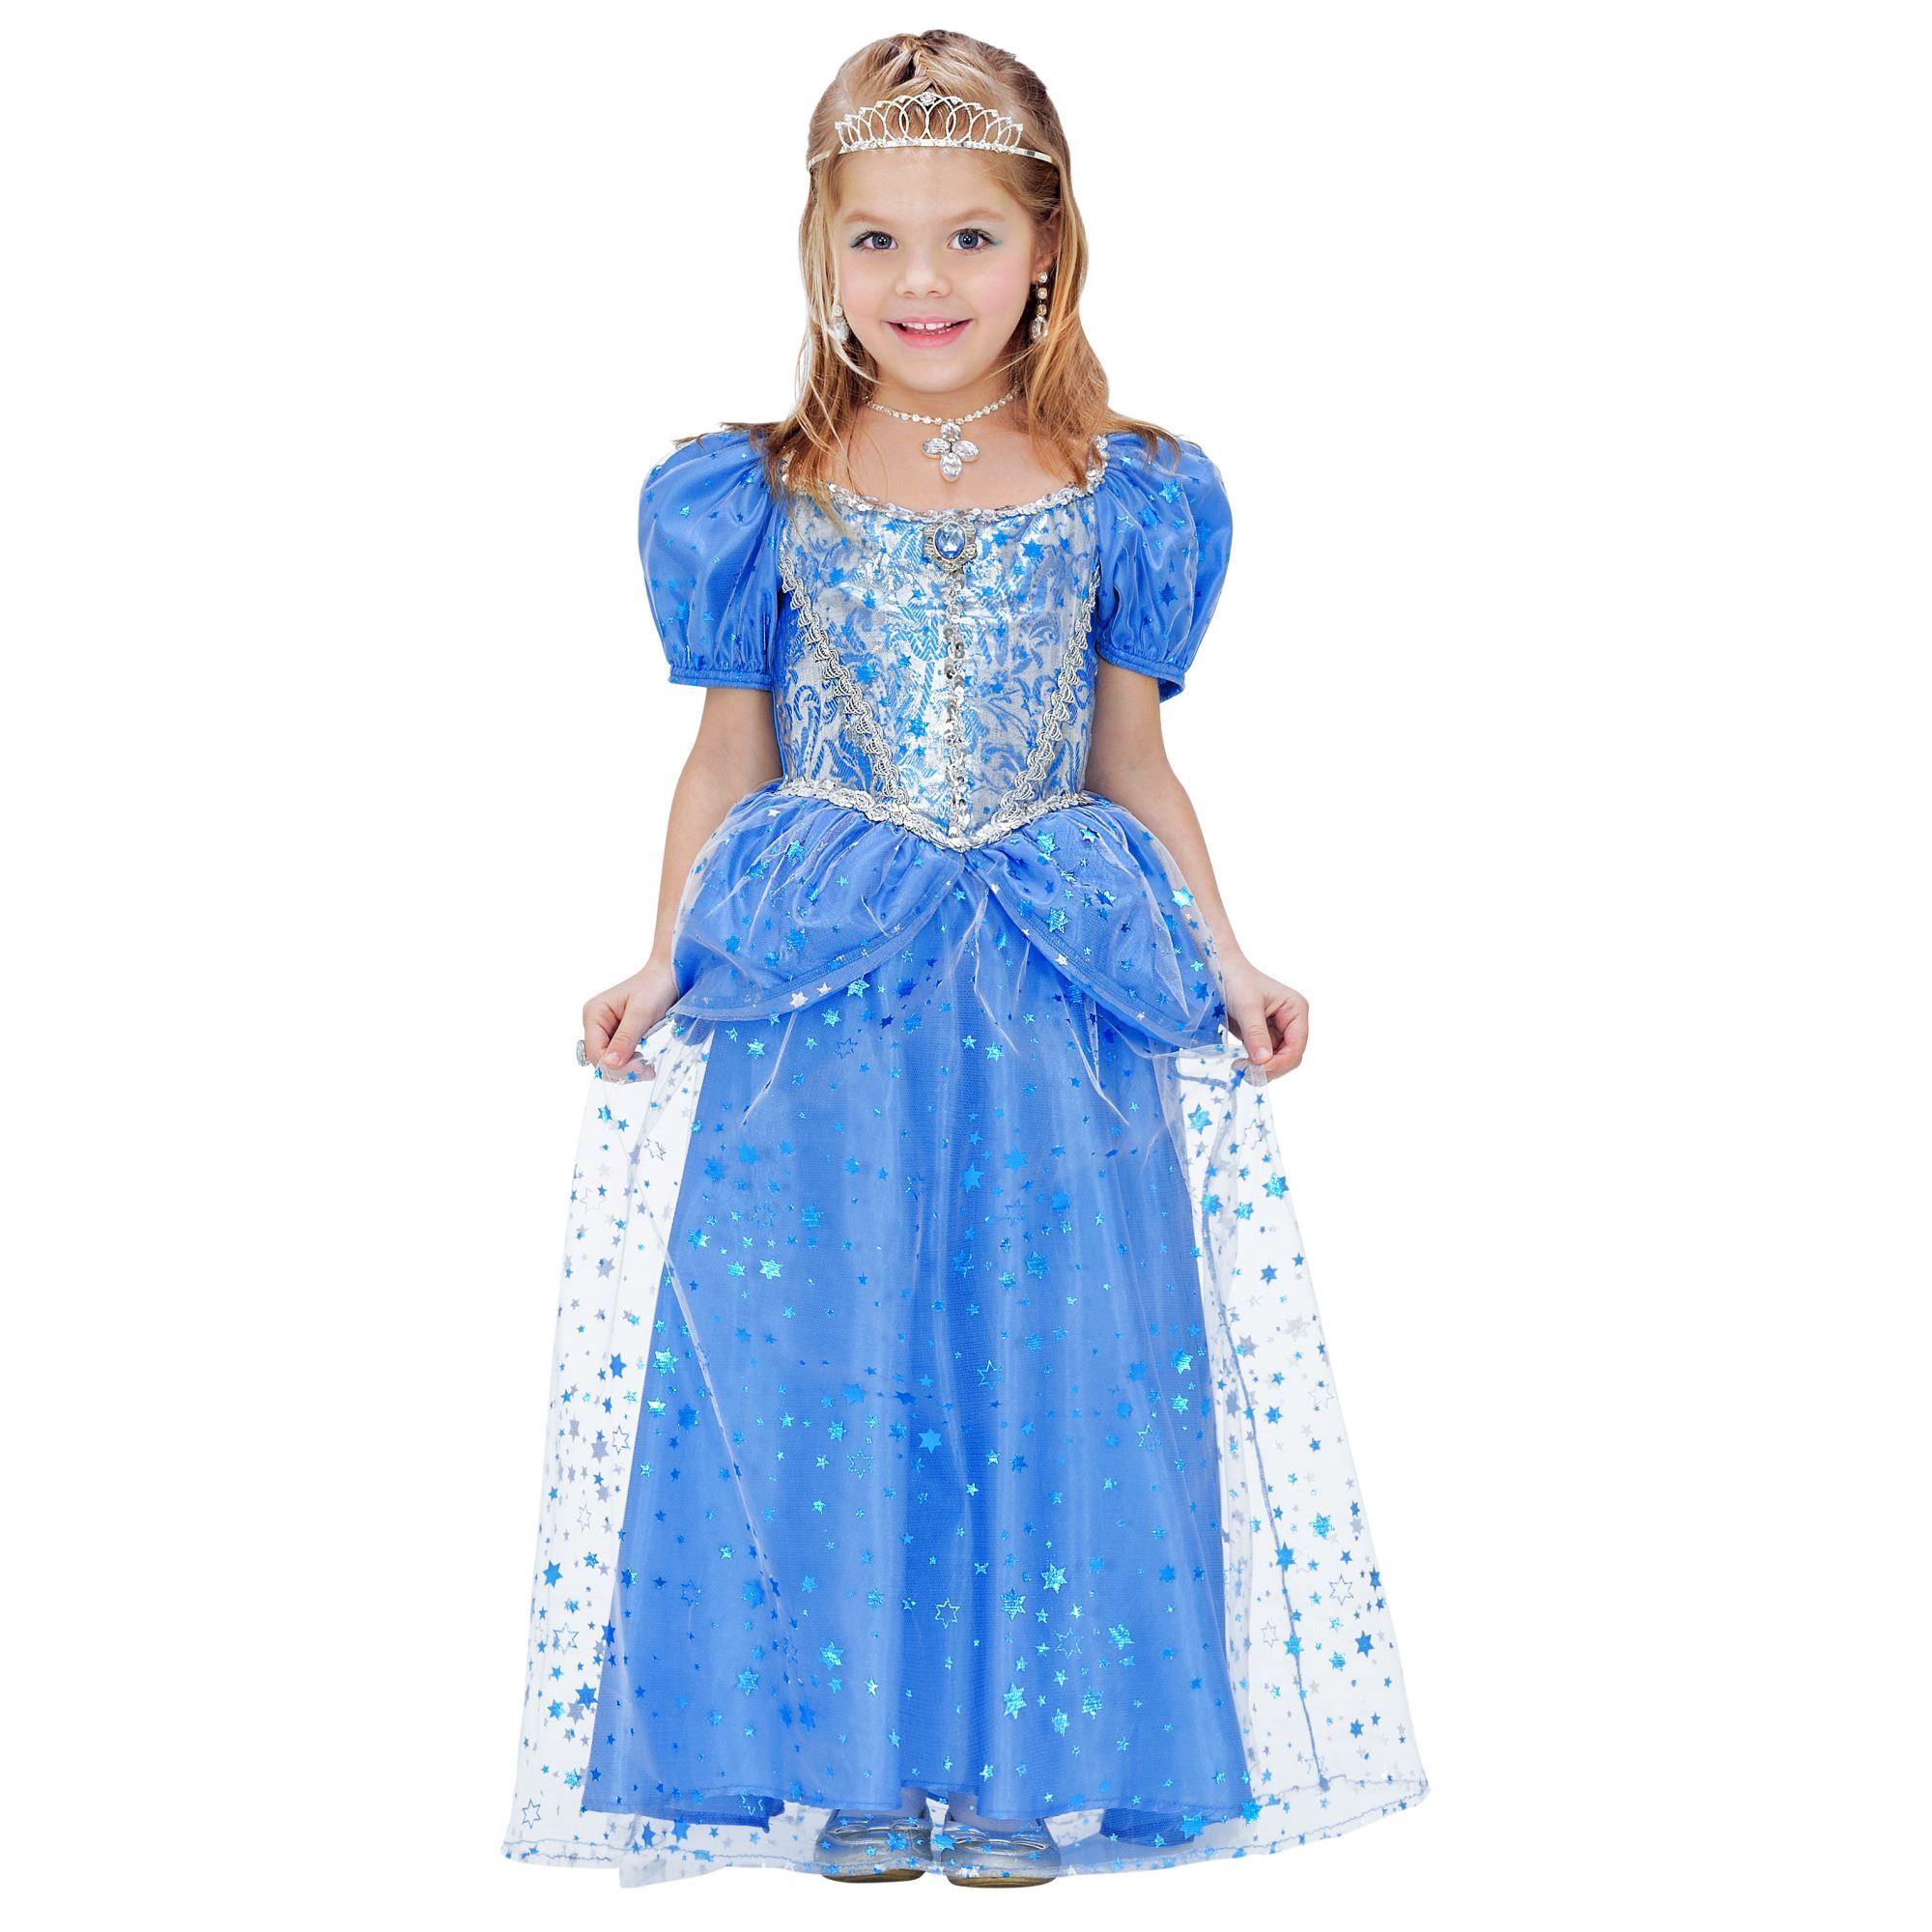 prinsessen jurk cute blauw kind meisje schattig blauwe prinsessen jurk